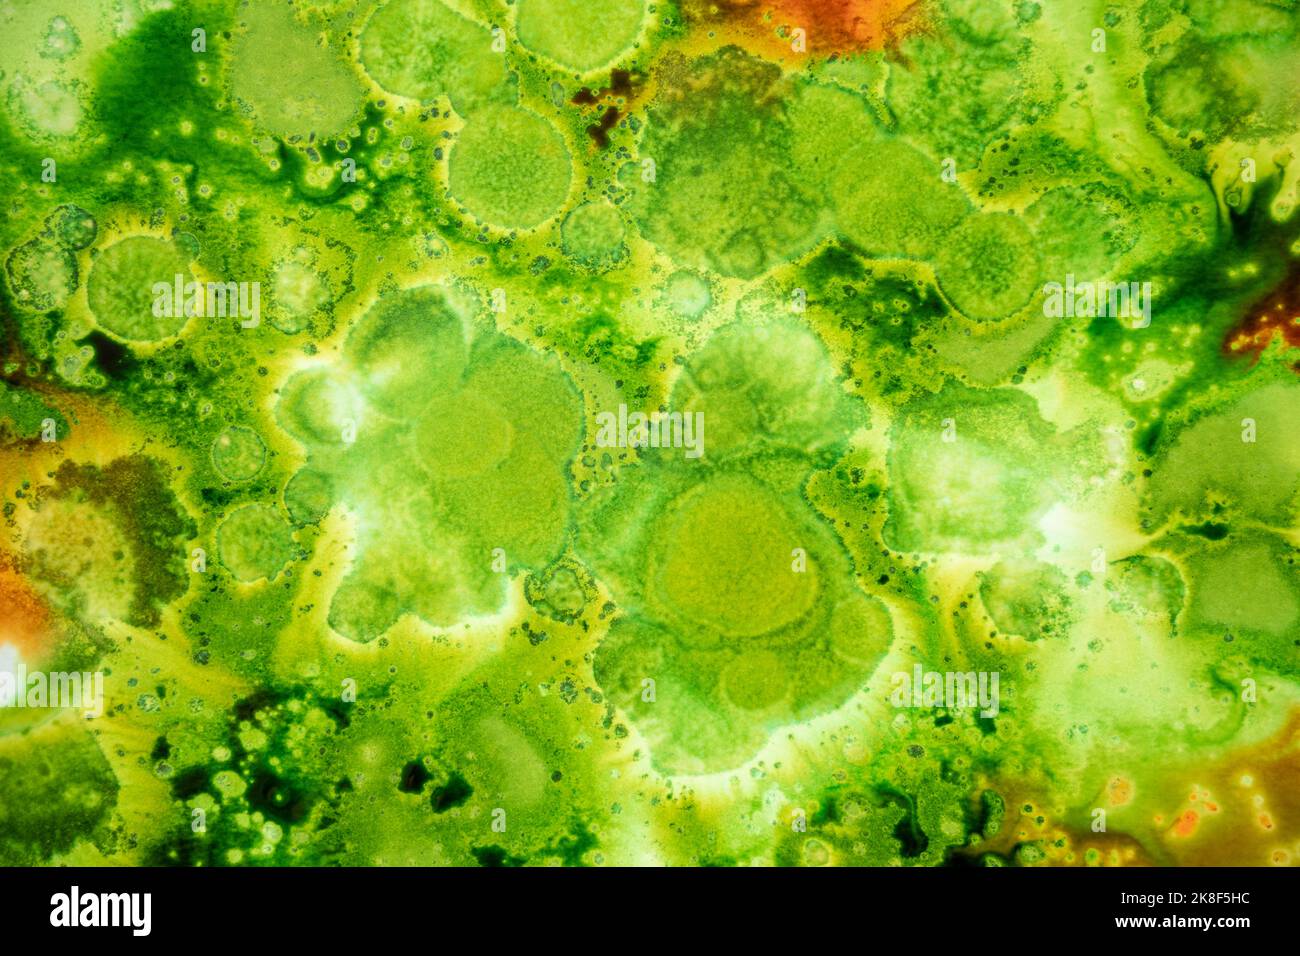 Struttura organica realizzata con acquerello liquido verde e arancione su carta bianca che simula foglie e concetti di natura e salute Foto Stock